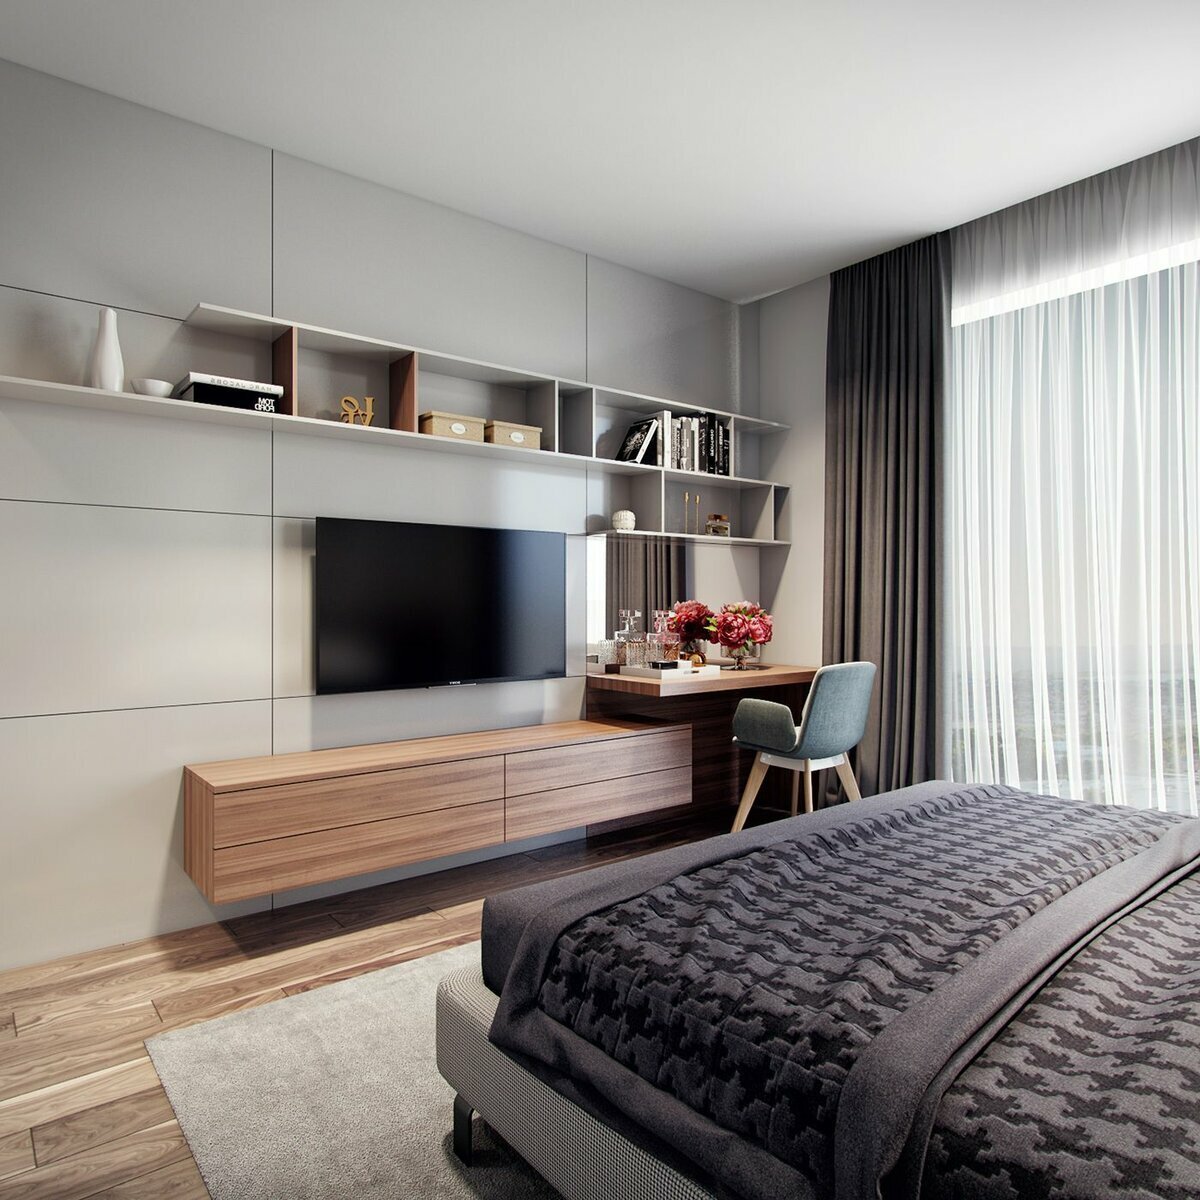 Дизайн спальни с телевизором